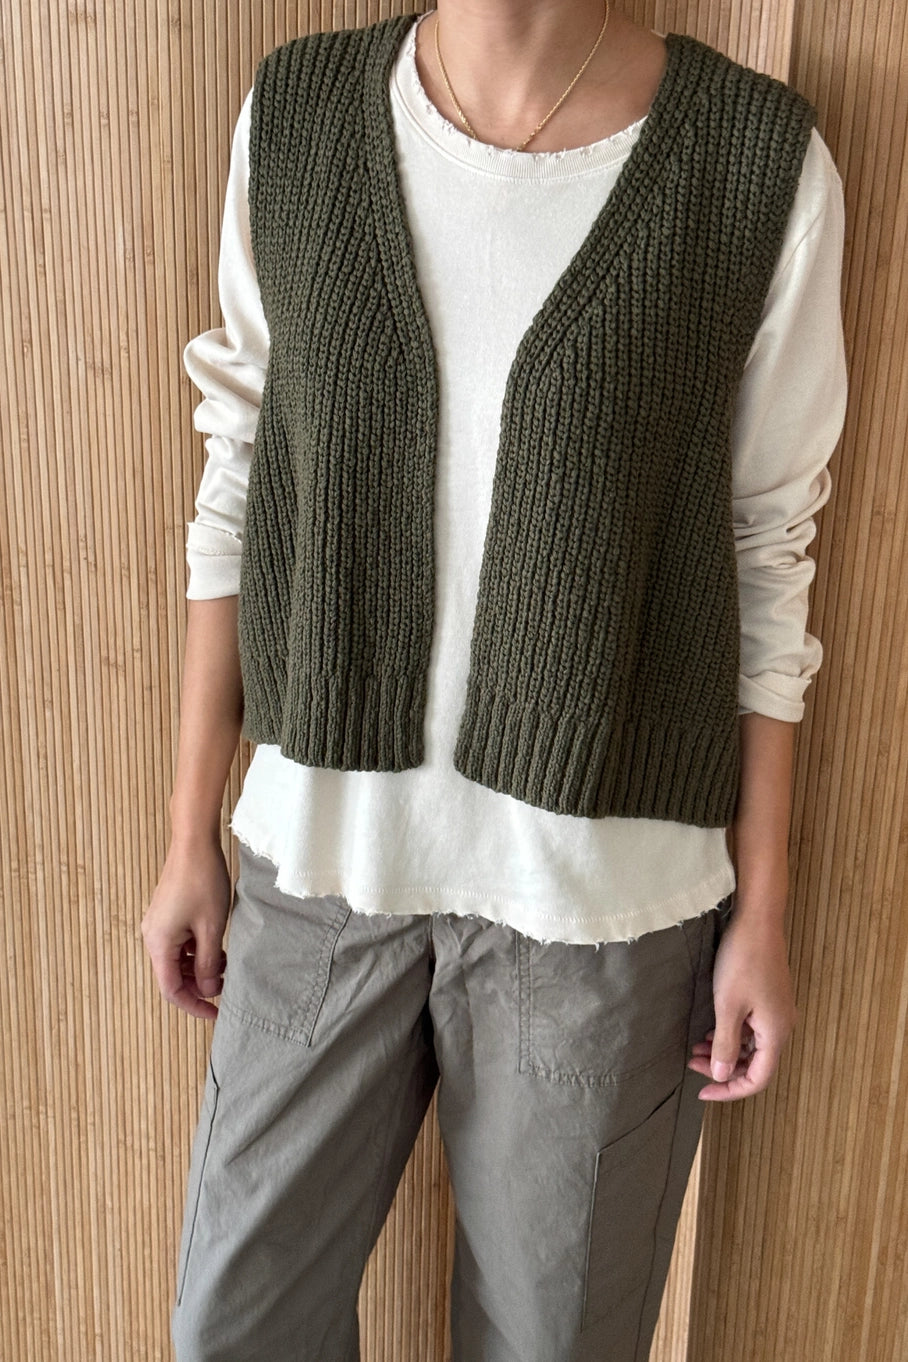 granny cotton sweater vest